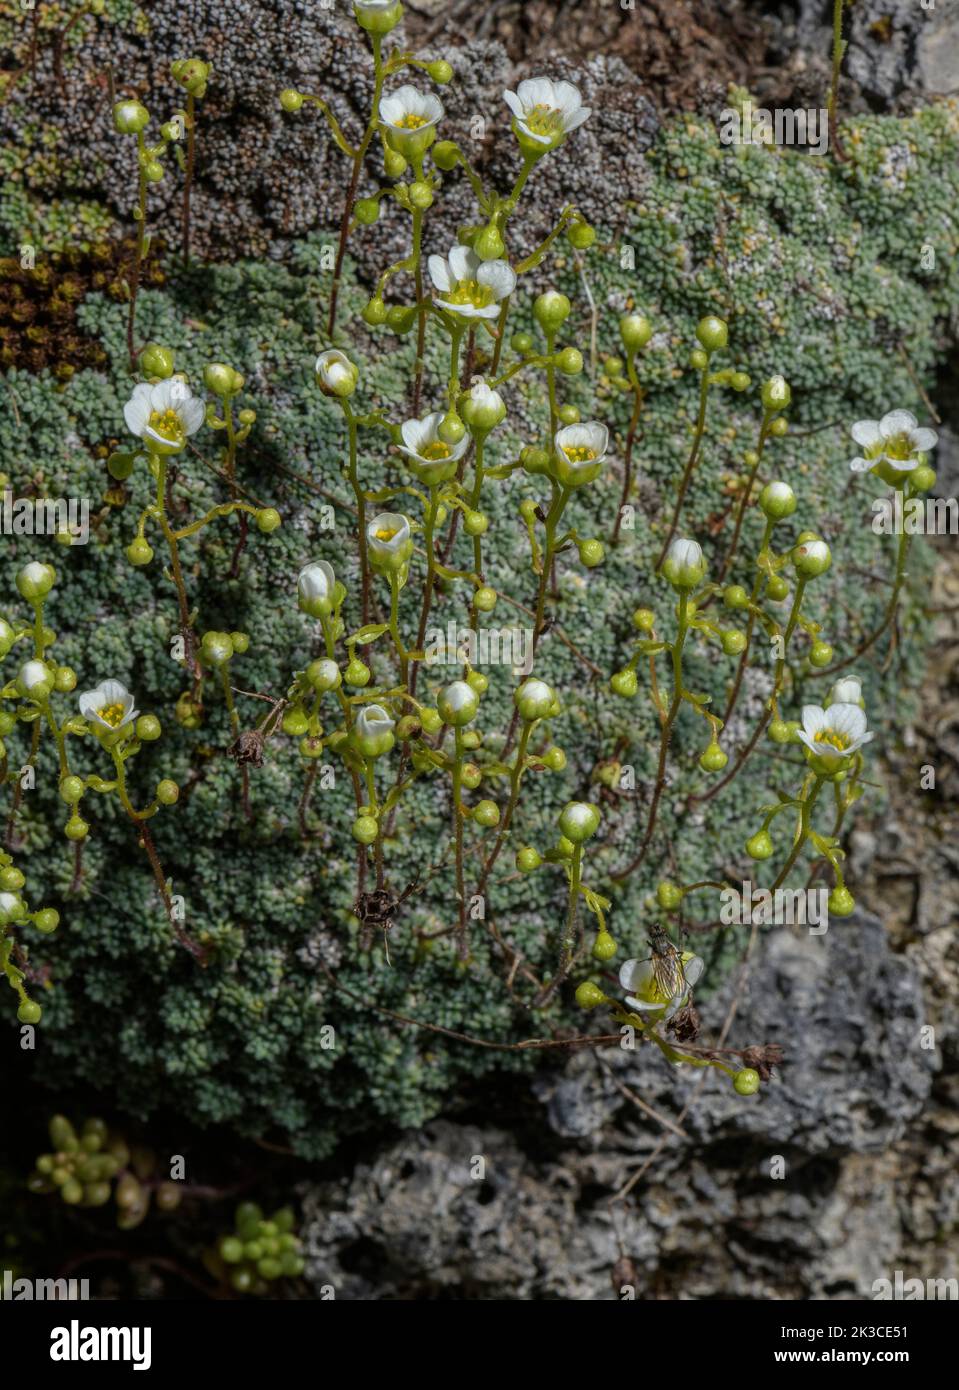 Dolomites saxifrage, Saxifraga squarrosa in flower, eastern Italian Alps. Stock Photo